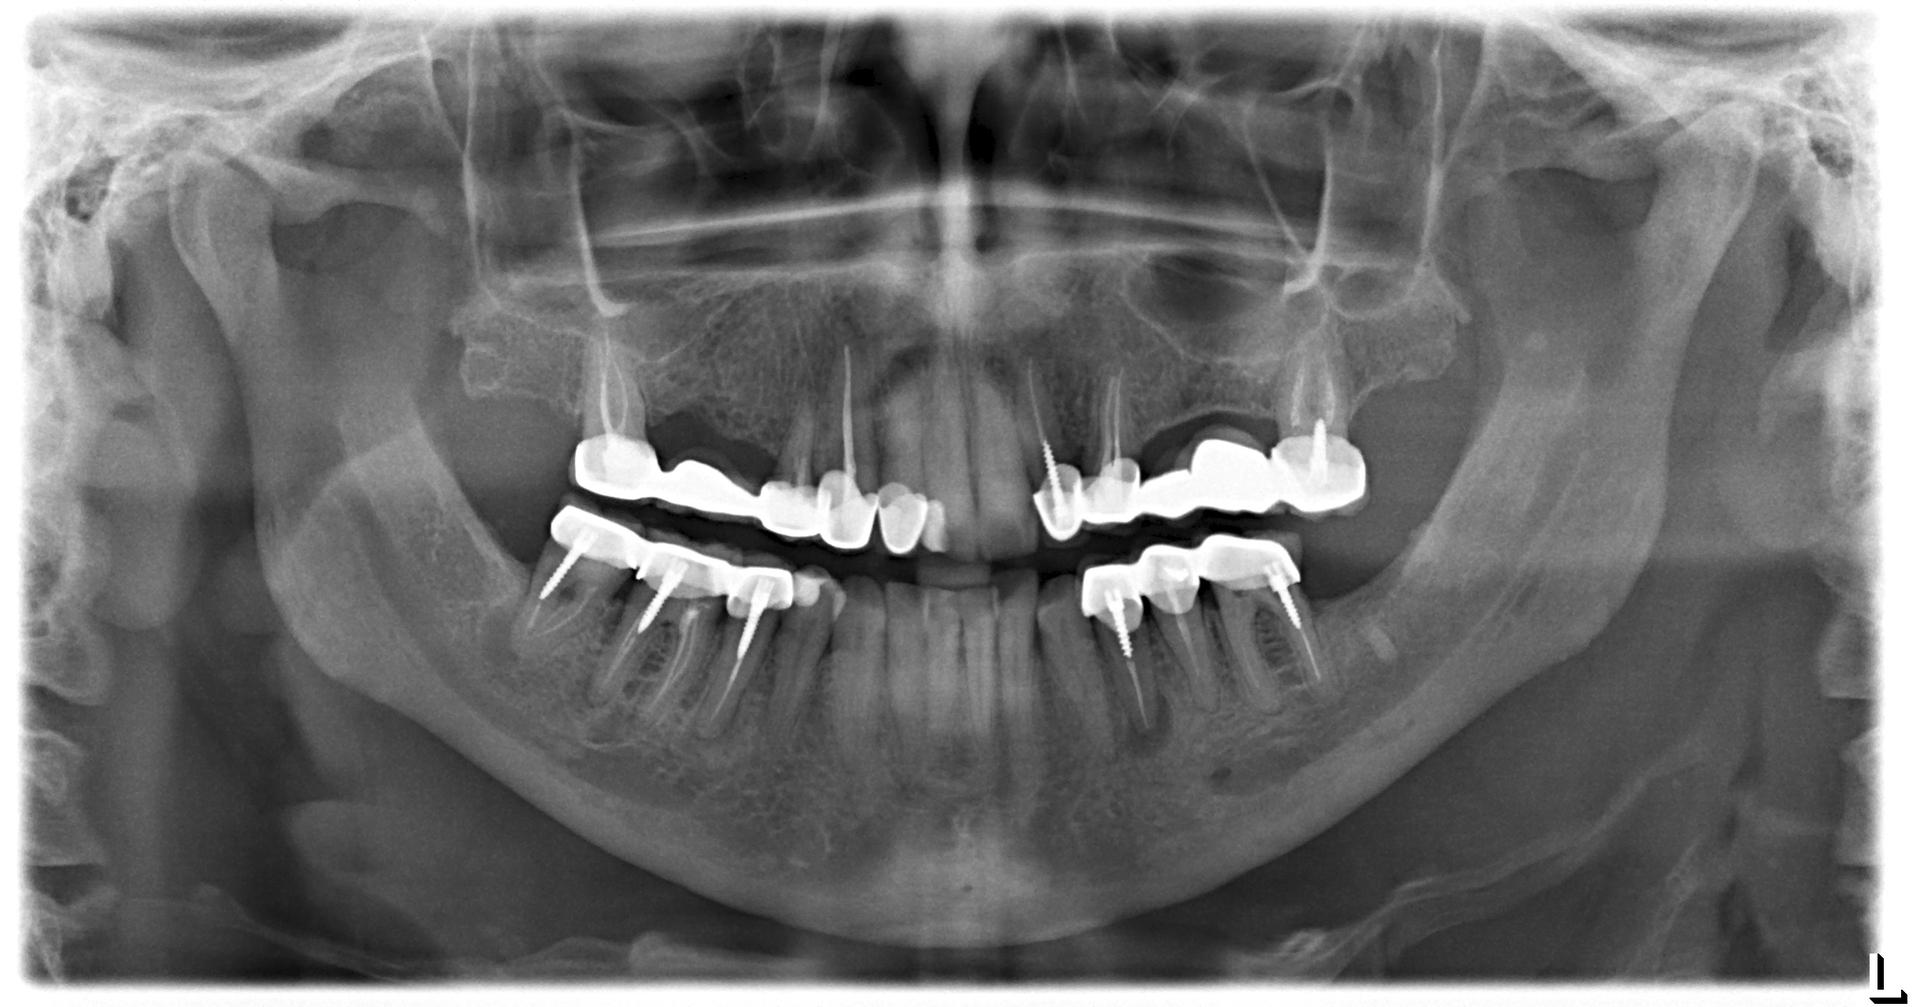 Пример МРТ снимка с металлическими зубными коронками